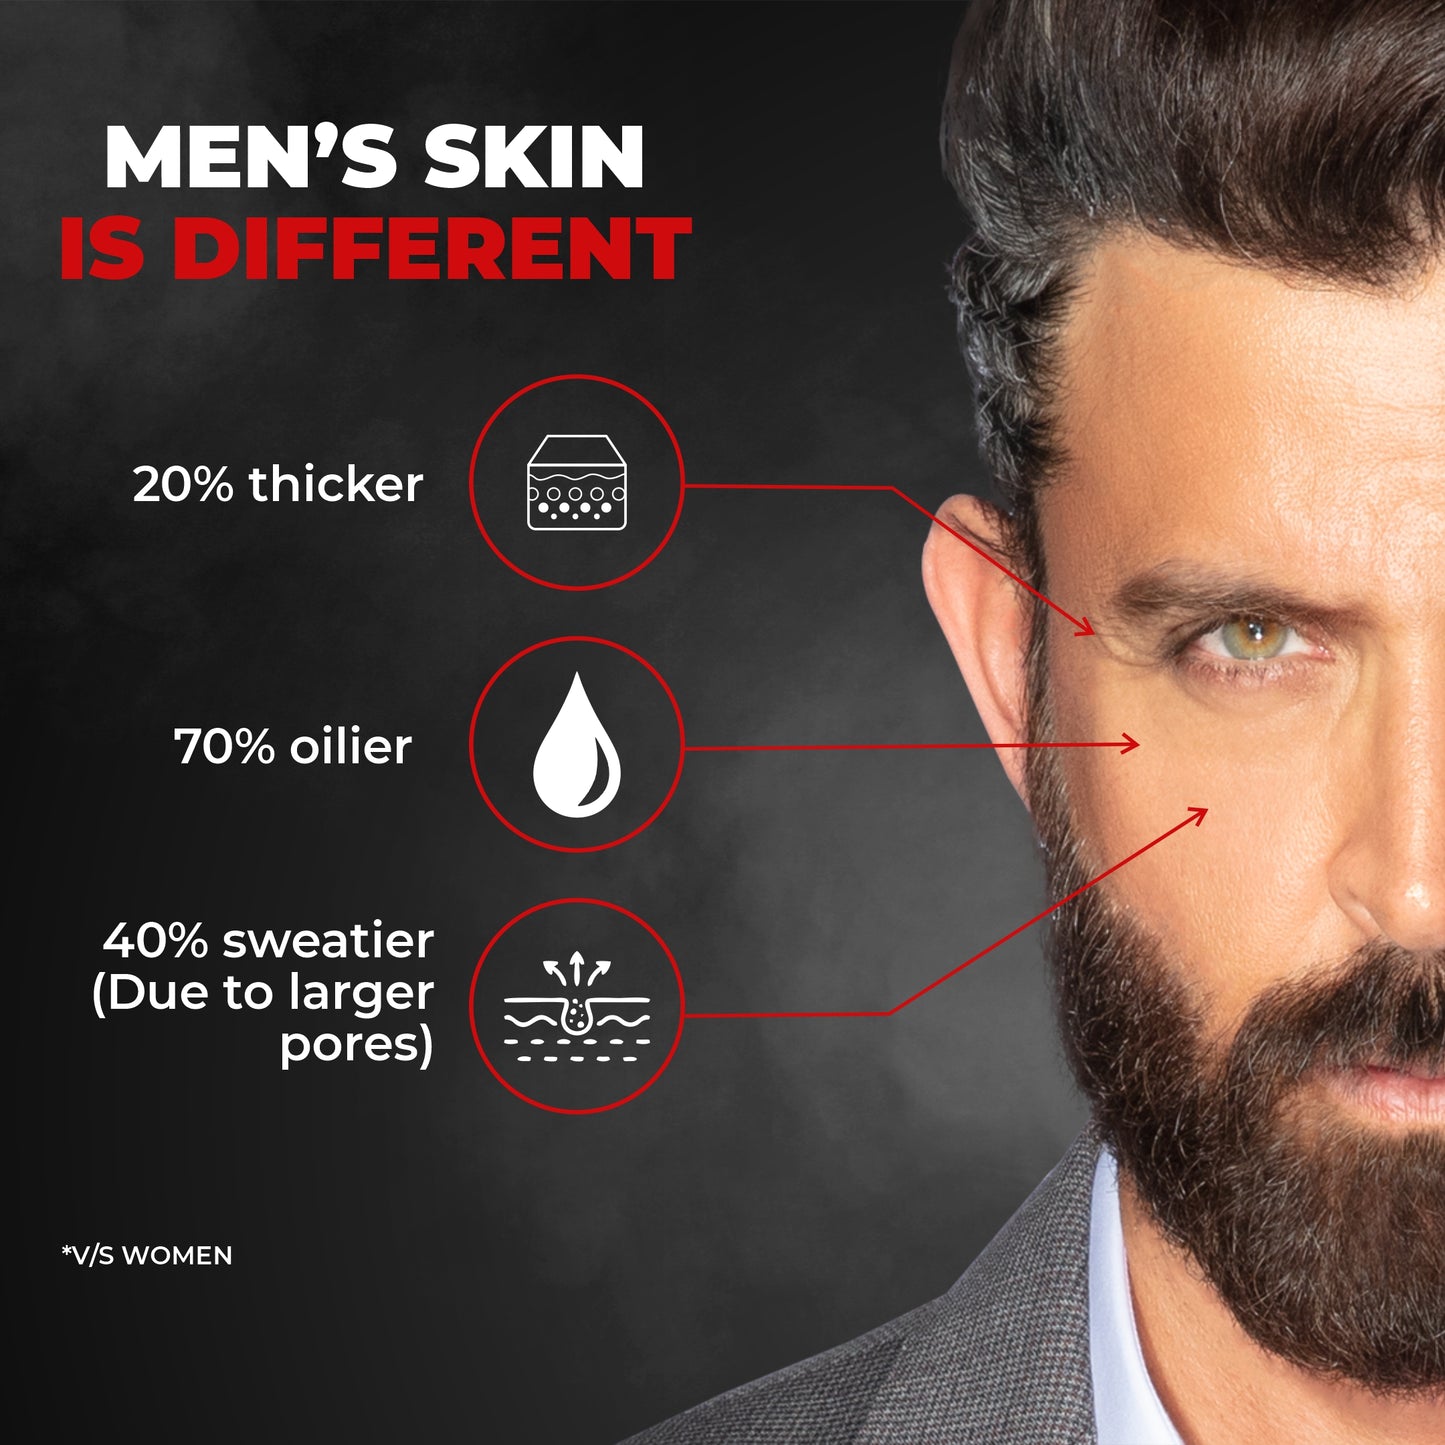 Beardo 30 Days Grooming Kit for Bearded Men